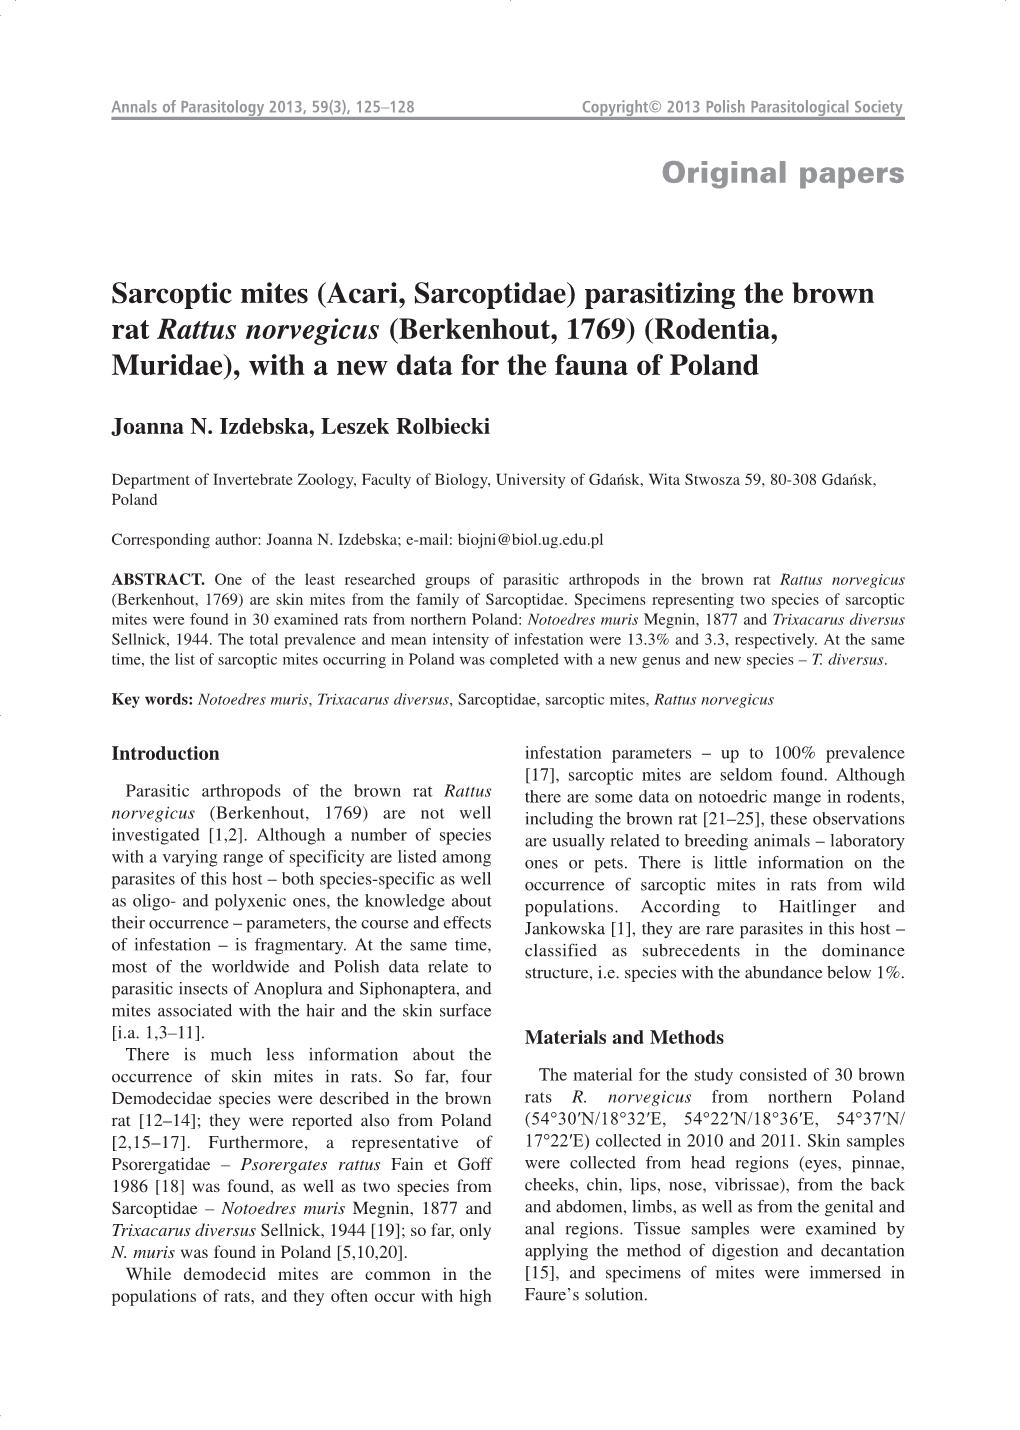 Original Papers Sarcoptic Mites (Acari, Sarcoptidae) Parasitizing The